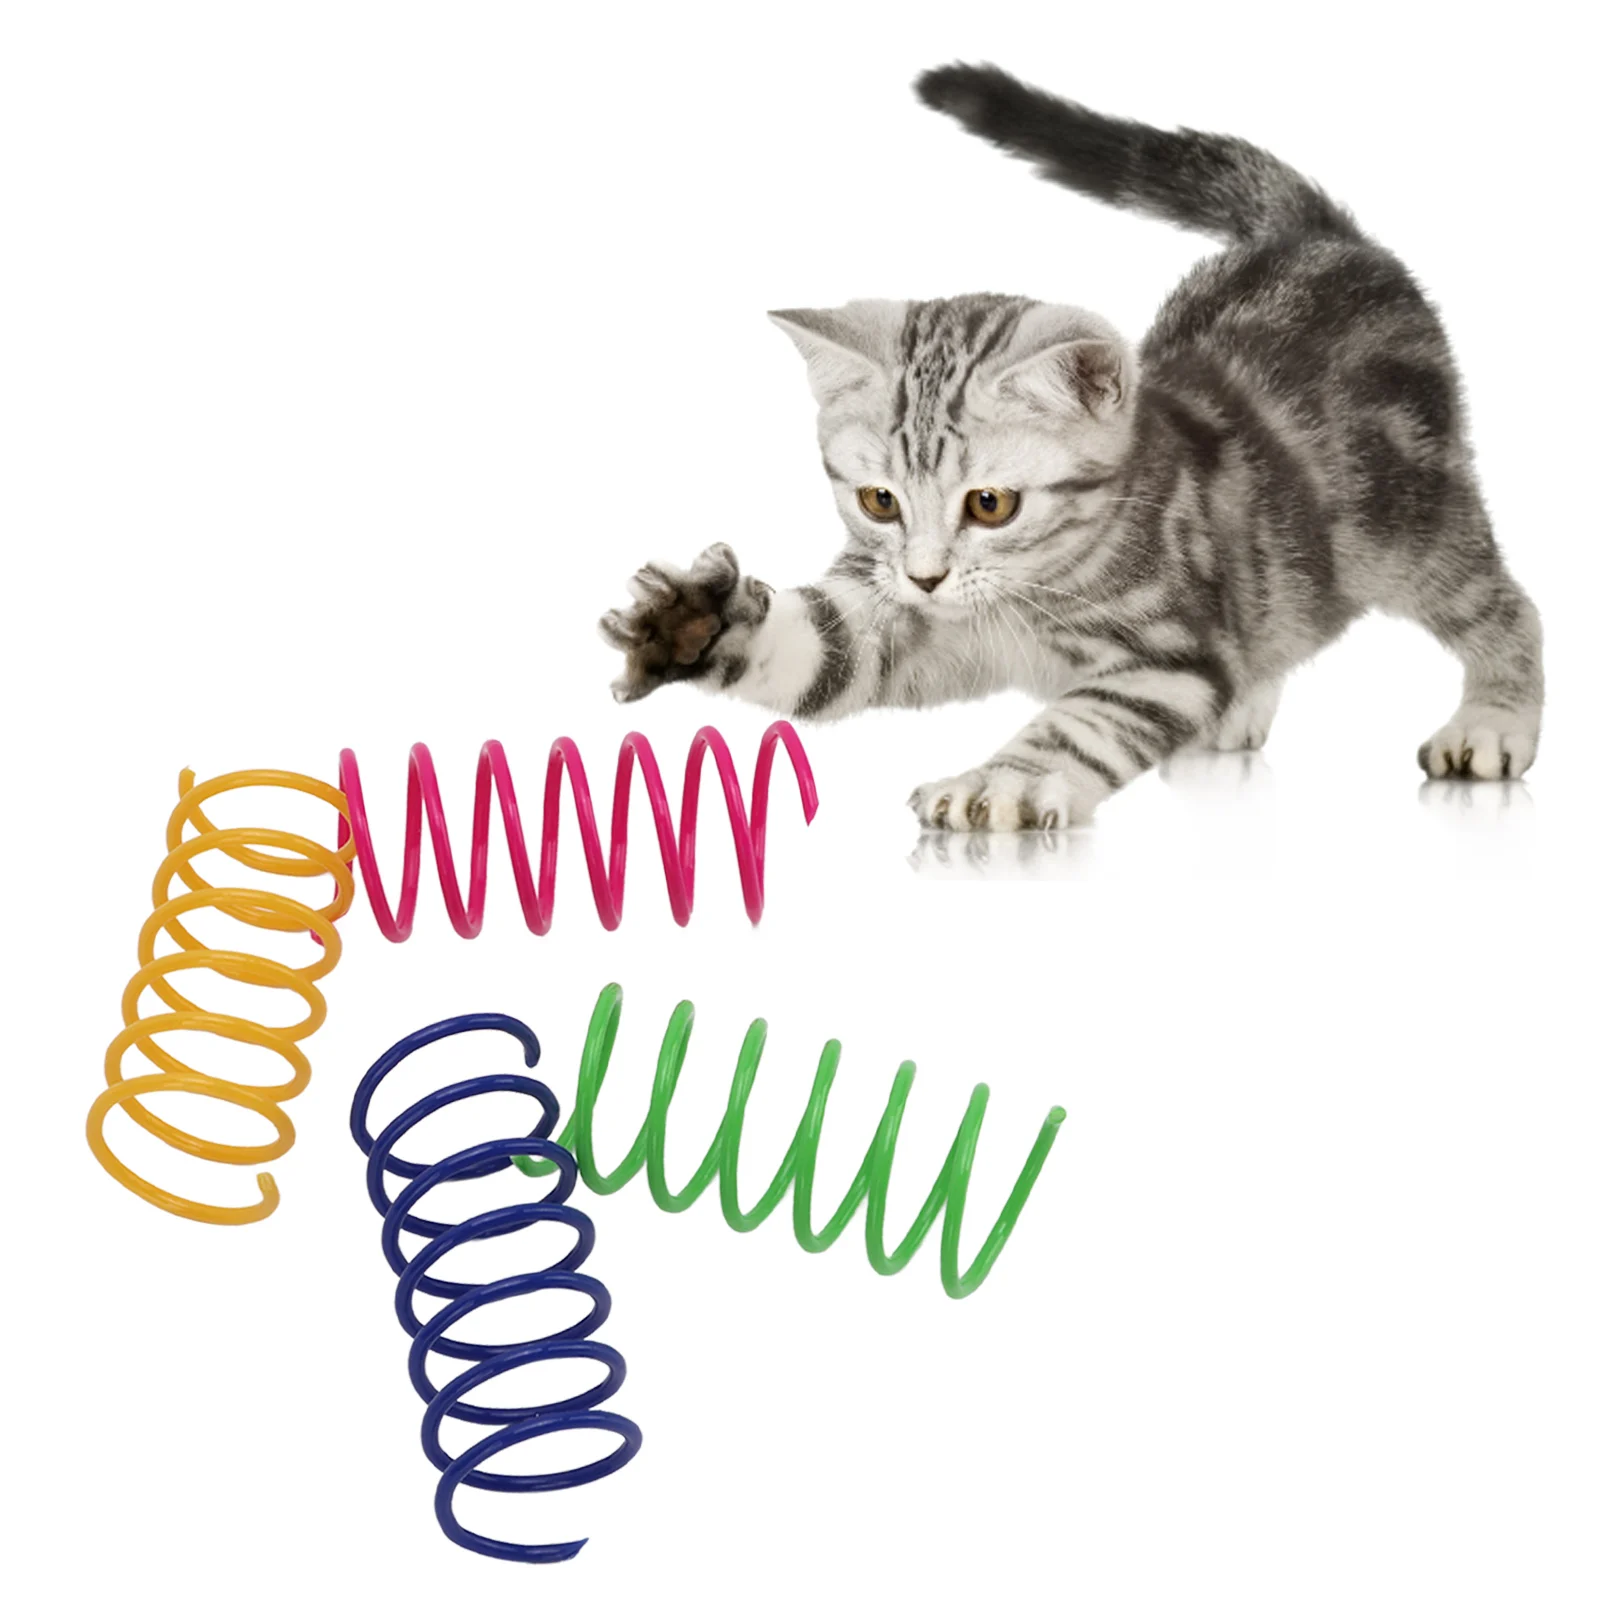 40 шт. Игрушки-пружины для кошек, устойчивые к укусам, интерактивные красочные пружины, игрушка для кошек для домашних животных. Кошки